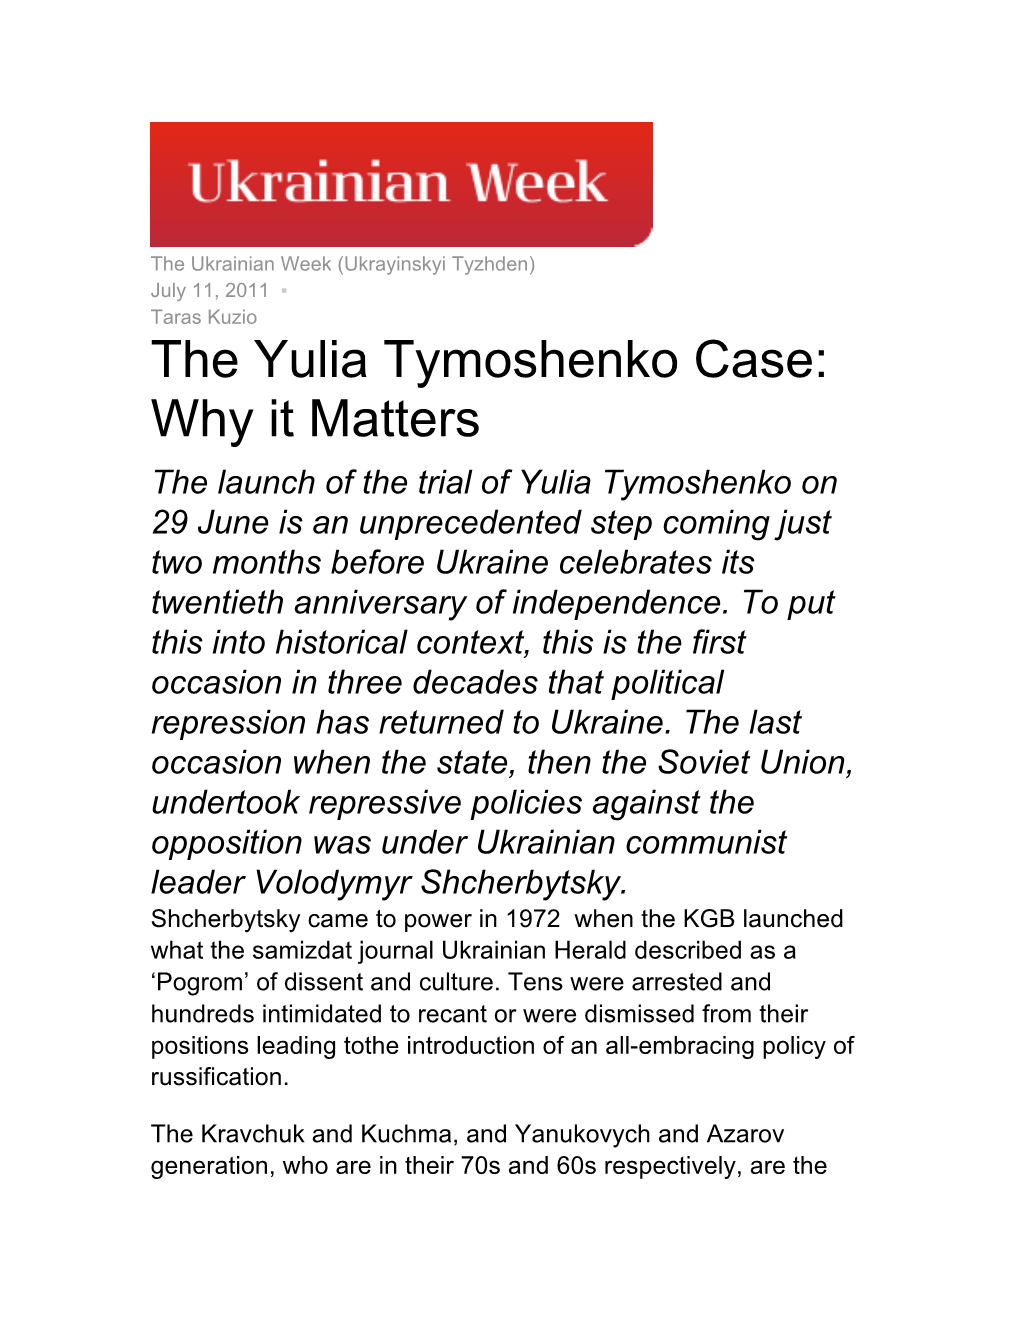 The Yulia Tymoshenko Case: Why It Matters